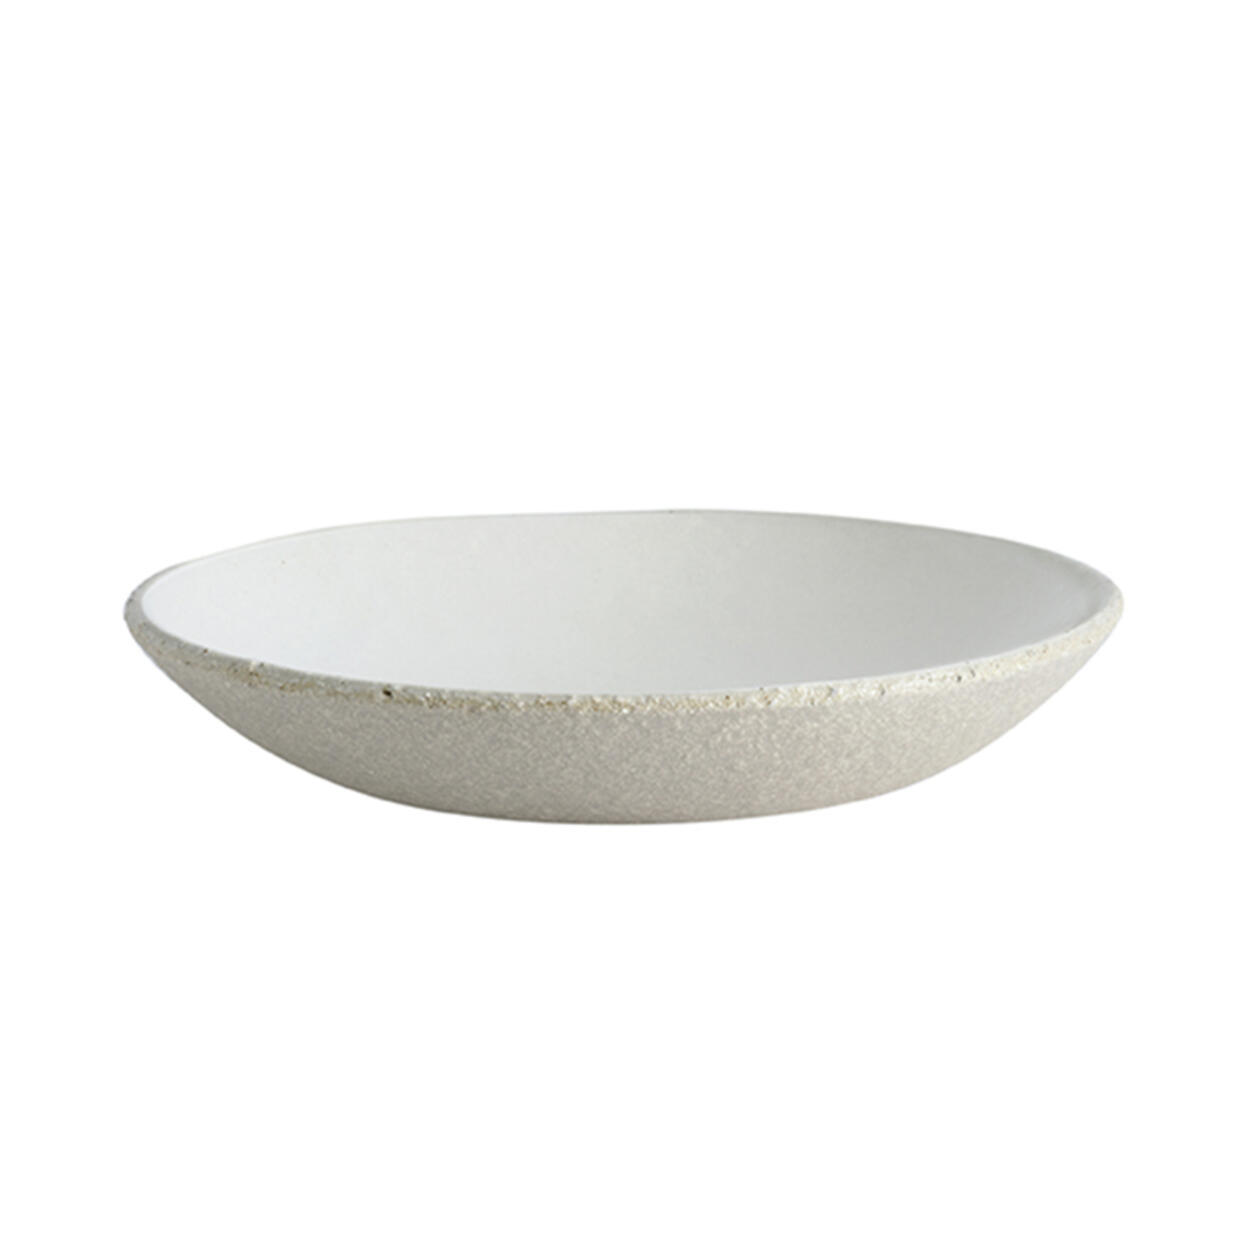 Handmade ceramic Pasta bowl Wabi white